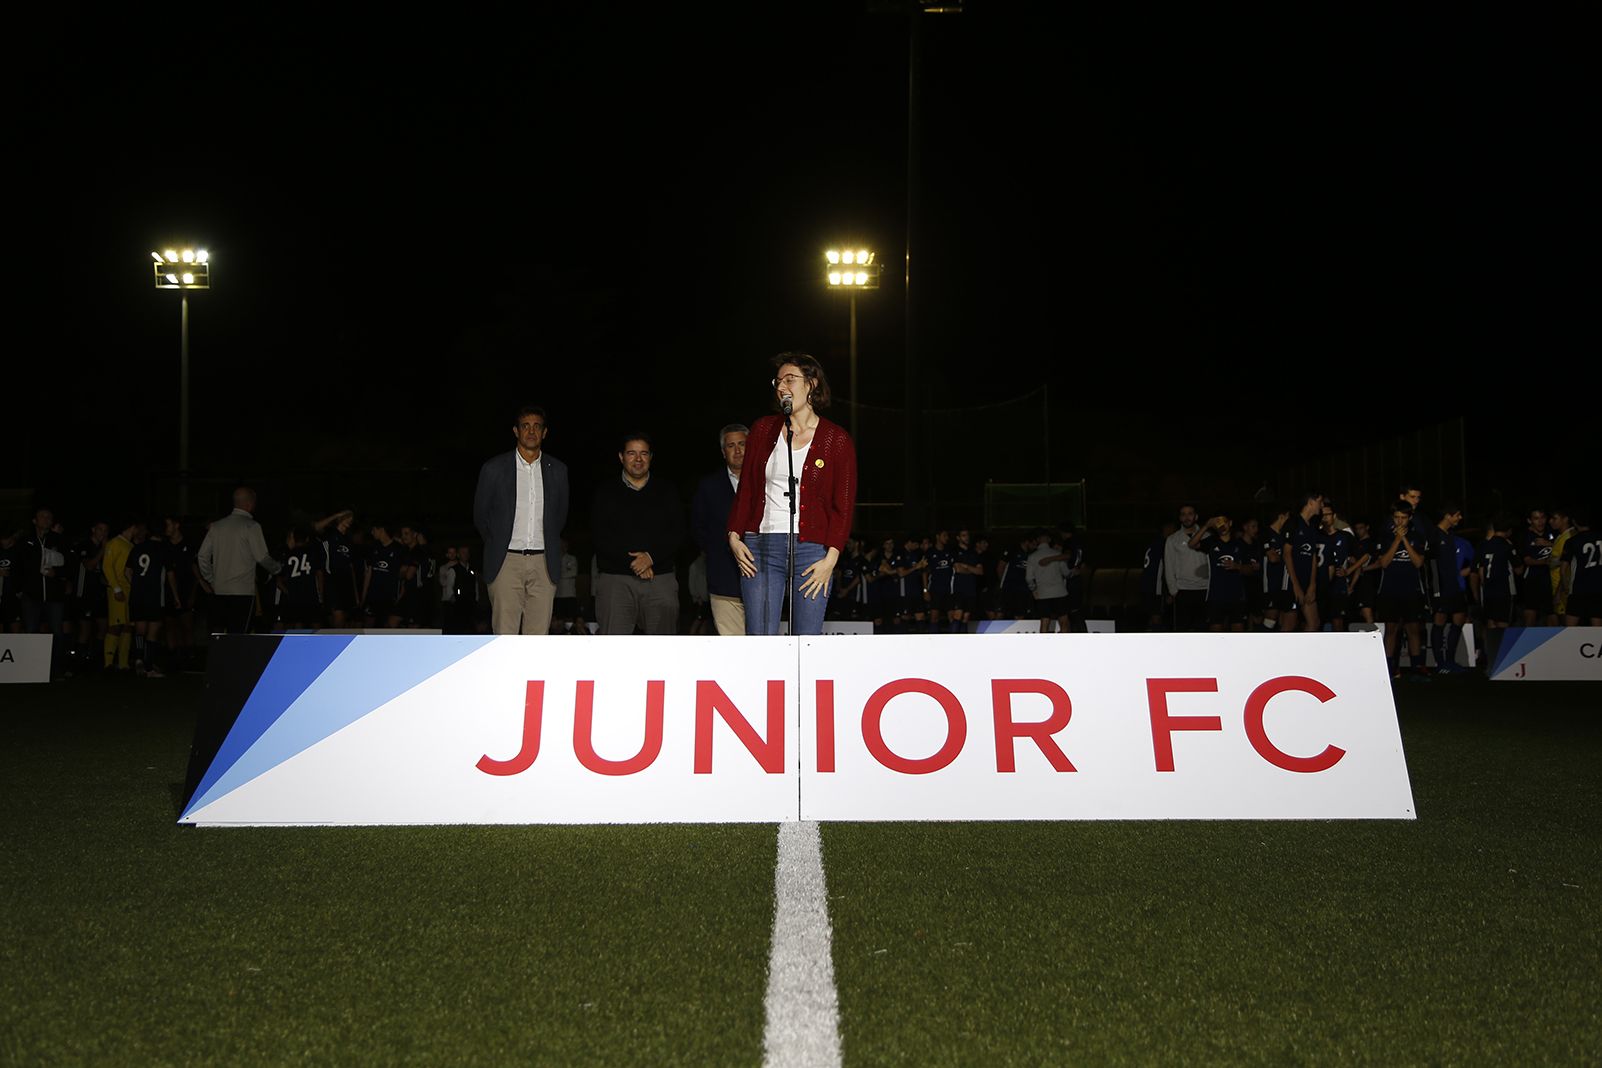 Parlaments a la Presentació Futbol Junior FC 2019. FOTO: Anna Bassa